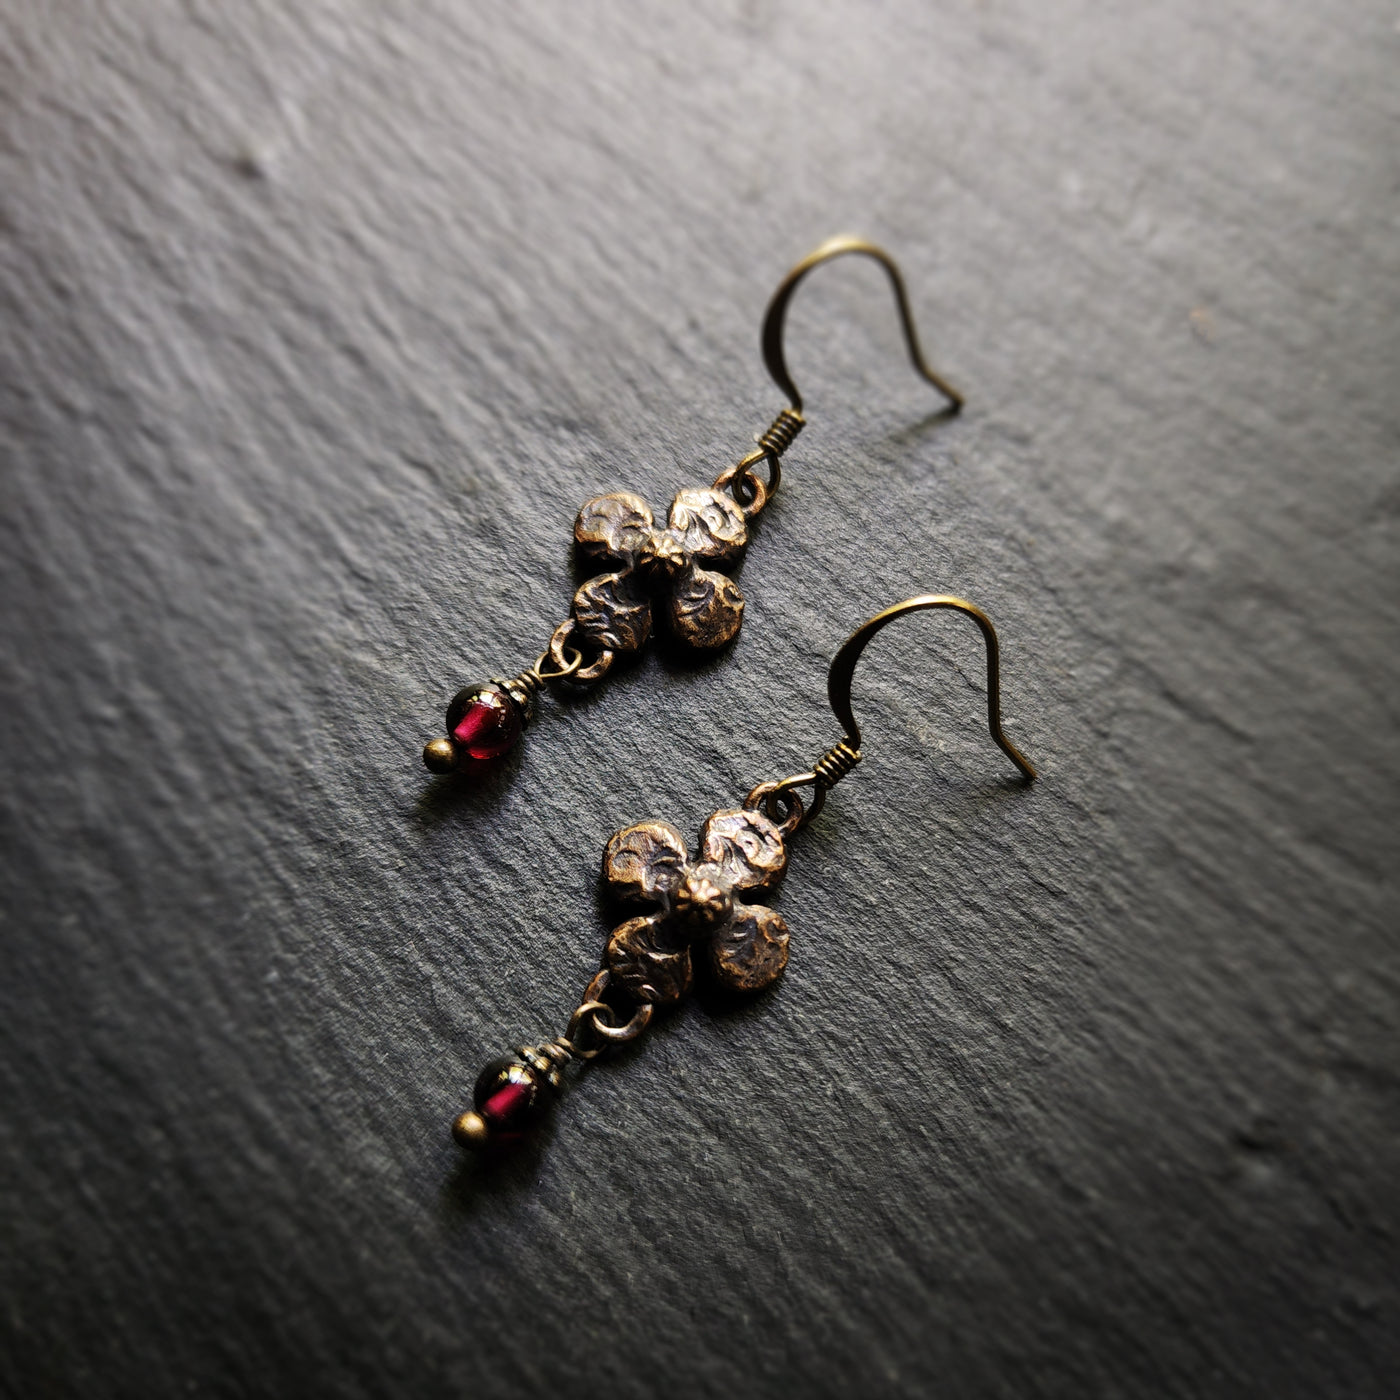 clover earrings : garnet & antiqued bronze